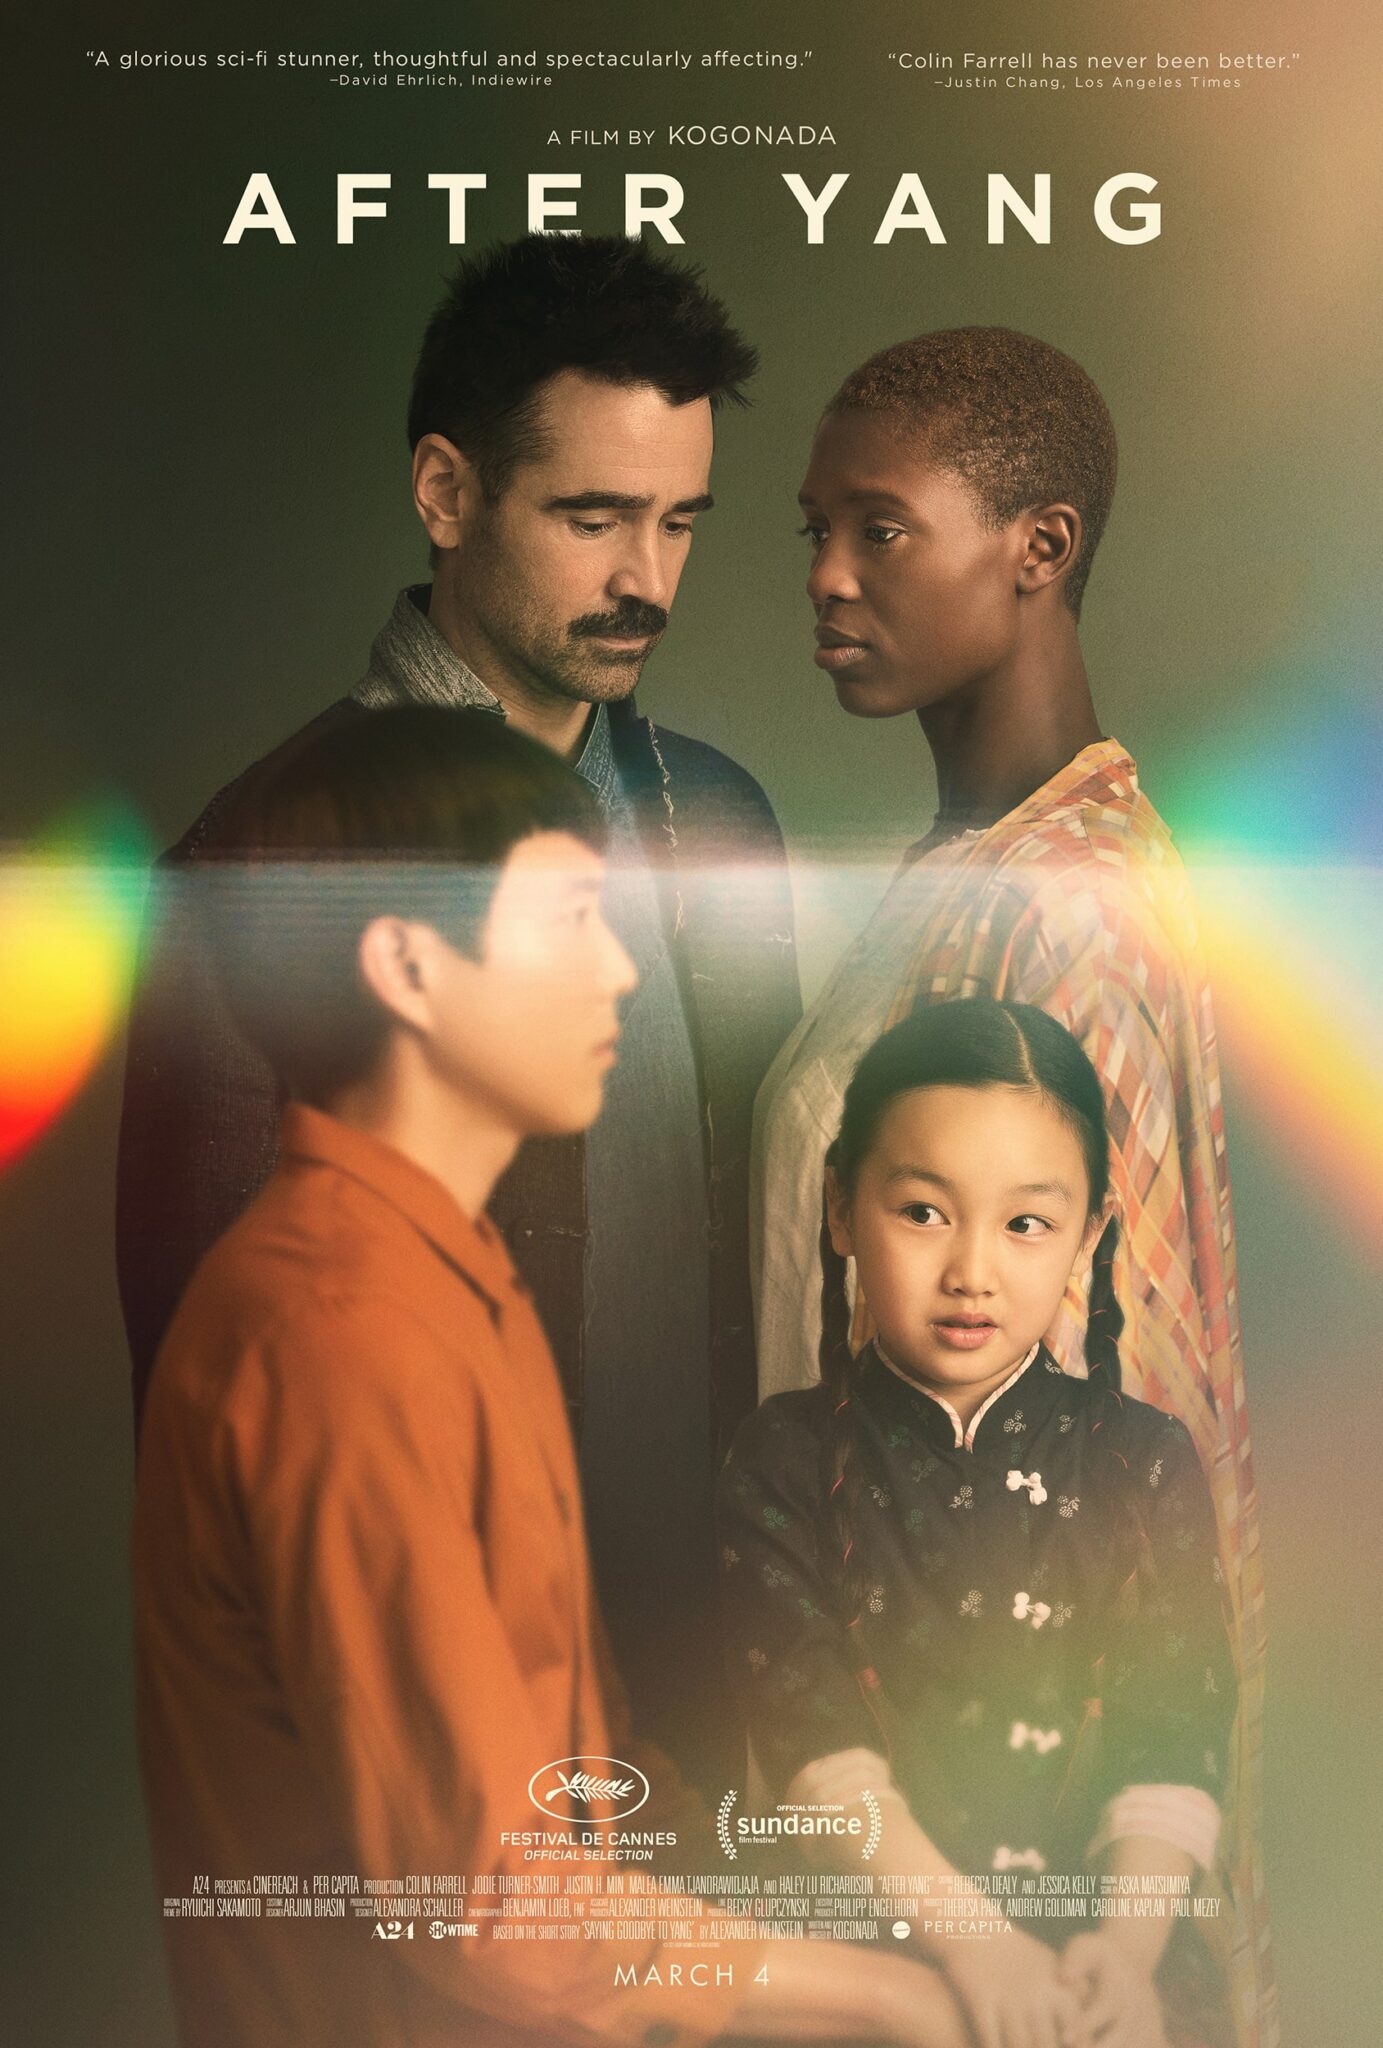 Das Poster zu After Yang zeigt die Familienmitglieder Jake (Colin Farrell), Kyra (Jodie Turner-Smith) und Mika (Malea Emma Tjandrawidjaja) gemeinsam mit dem Androiden Yang (Justin H. Min).